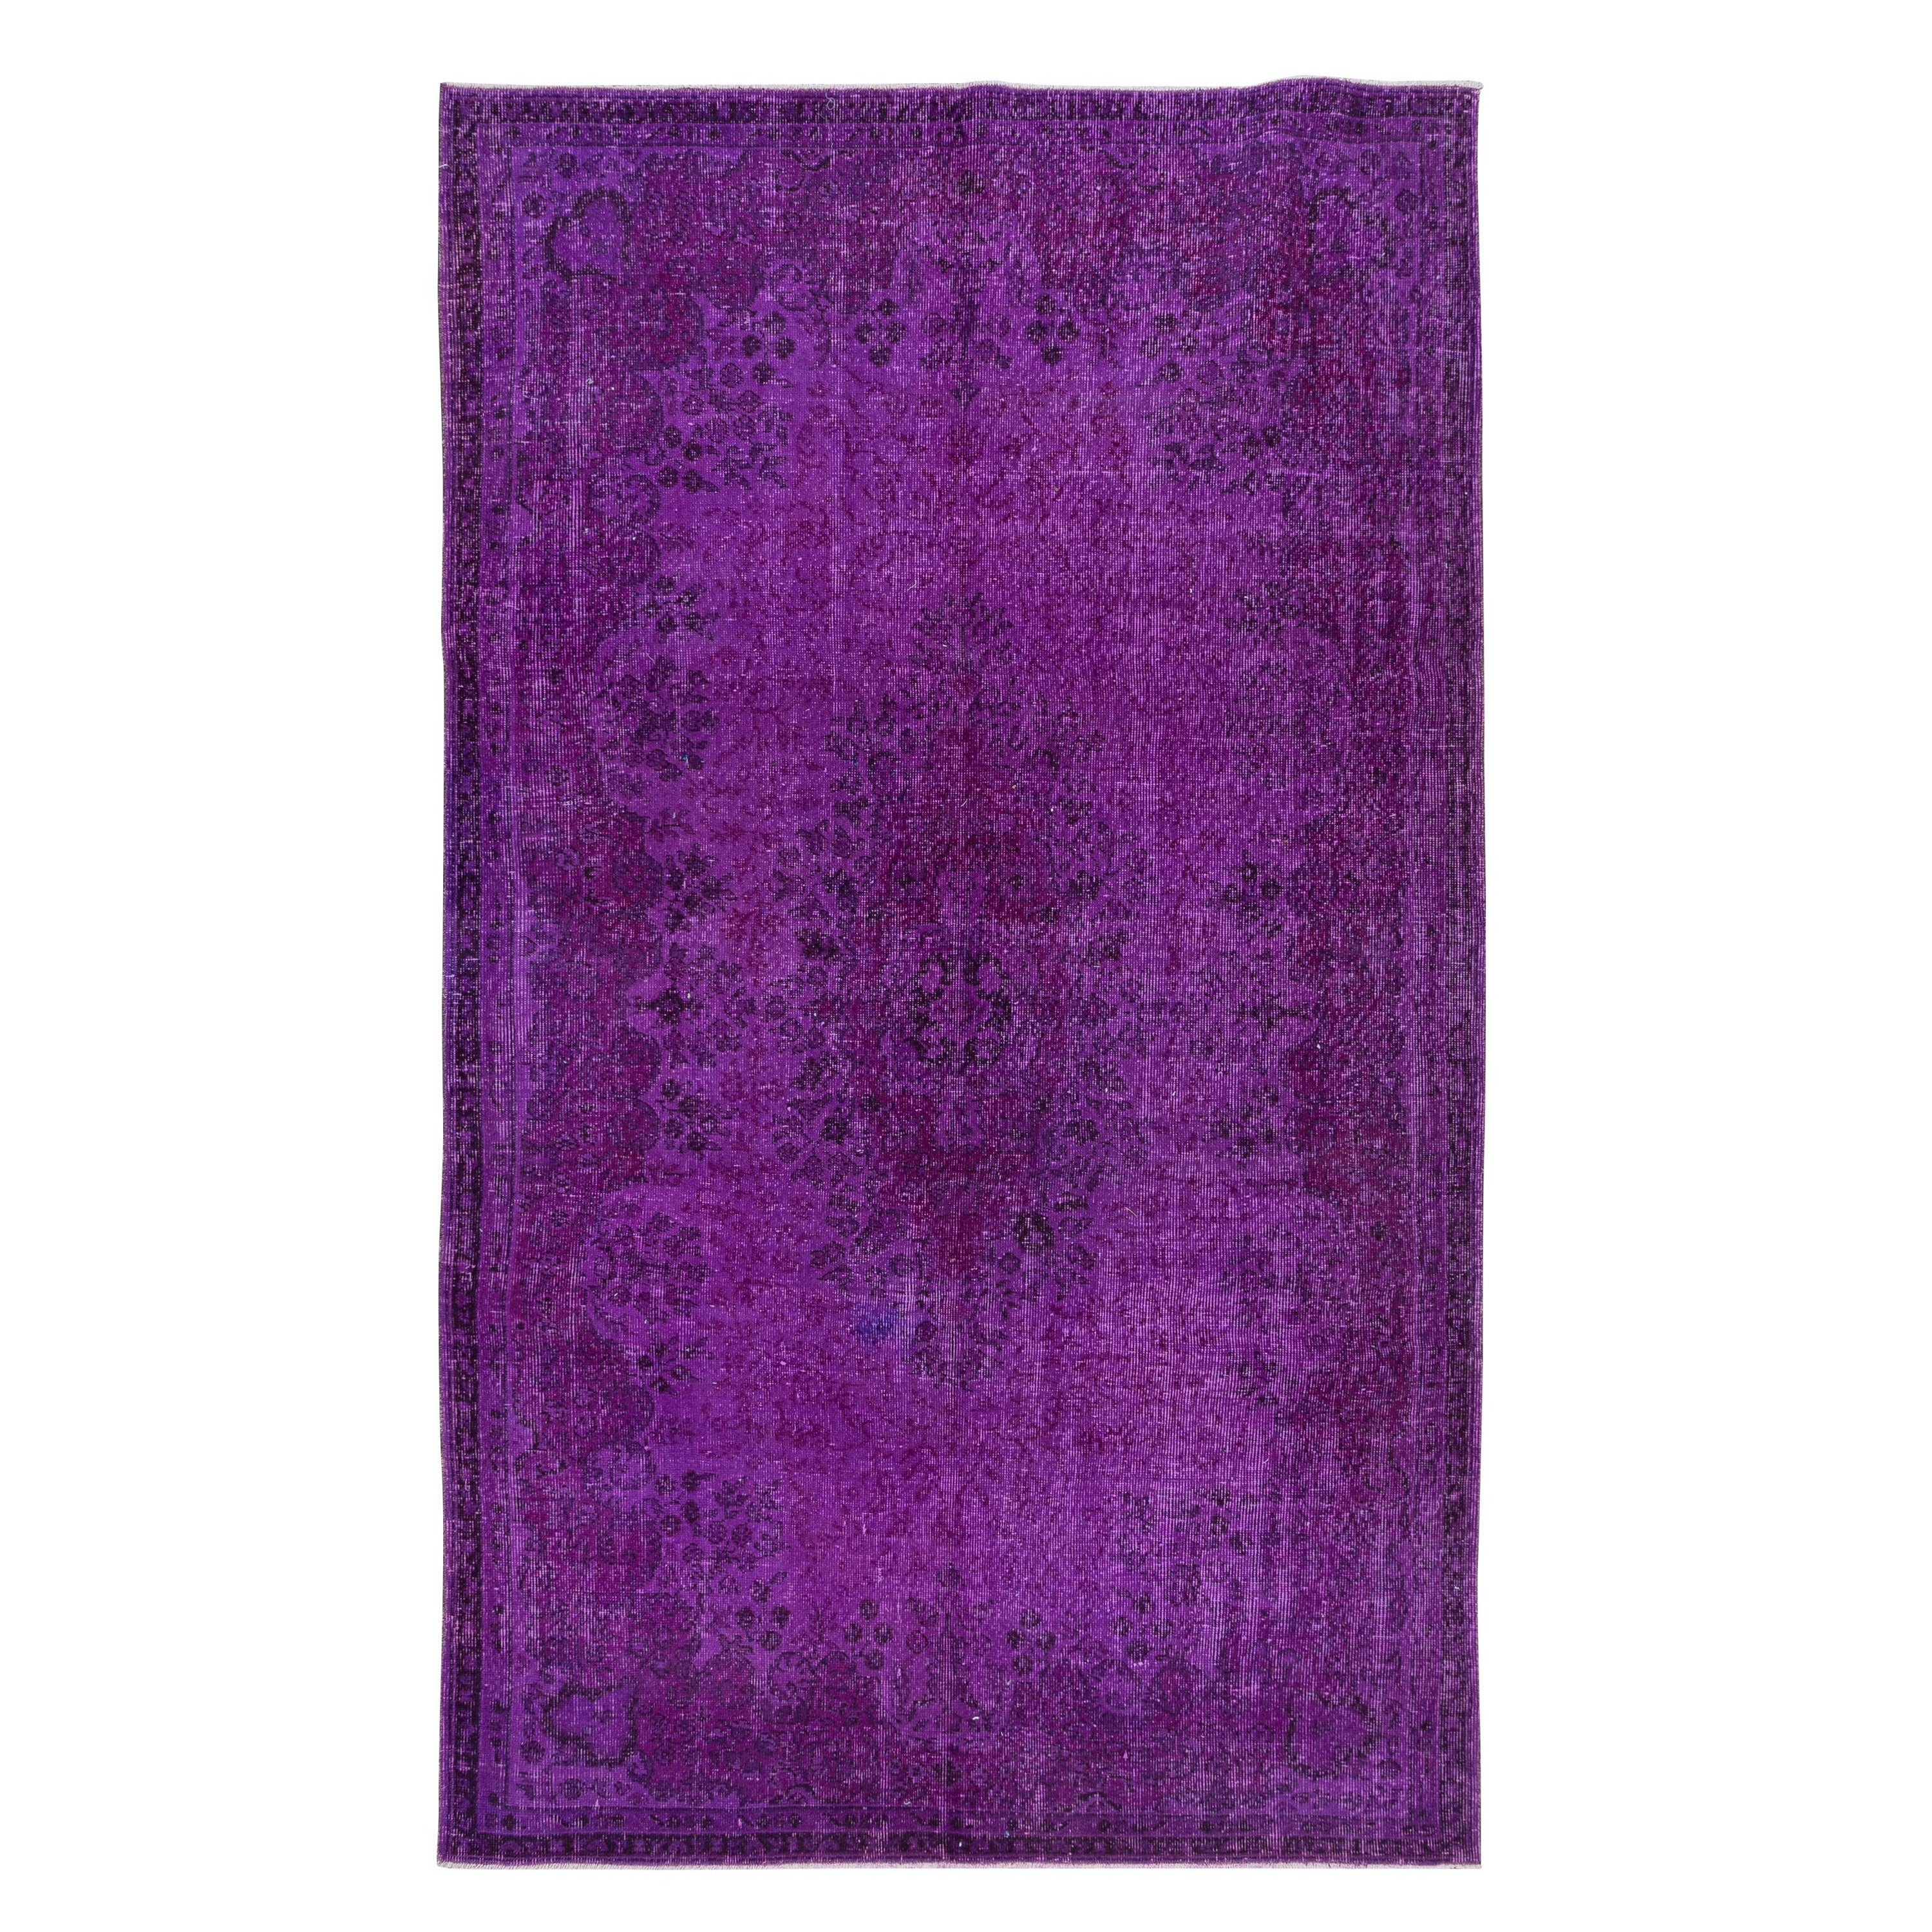 5.8x10 Ft Handmade Turkish Rug in Purple for Bedroom, Modern Living Room Carpet (tapis turc fait main en violet pour la chambre à coucher, le salon moderne)